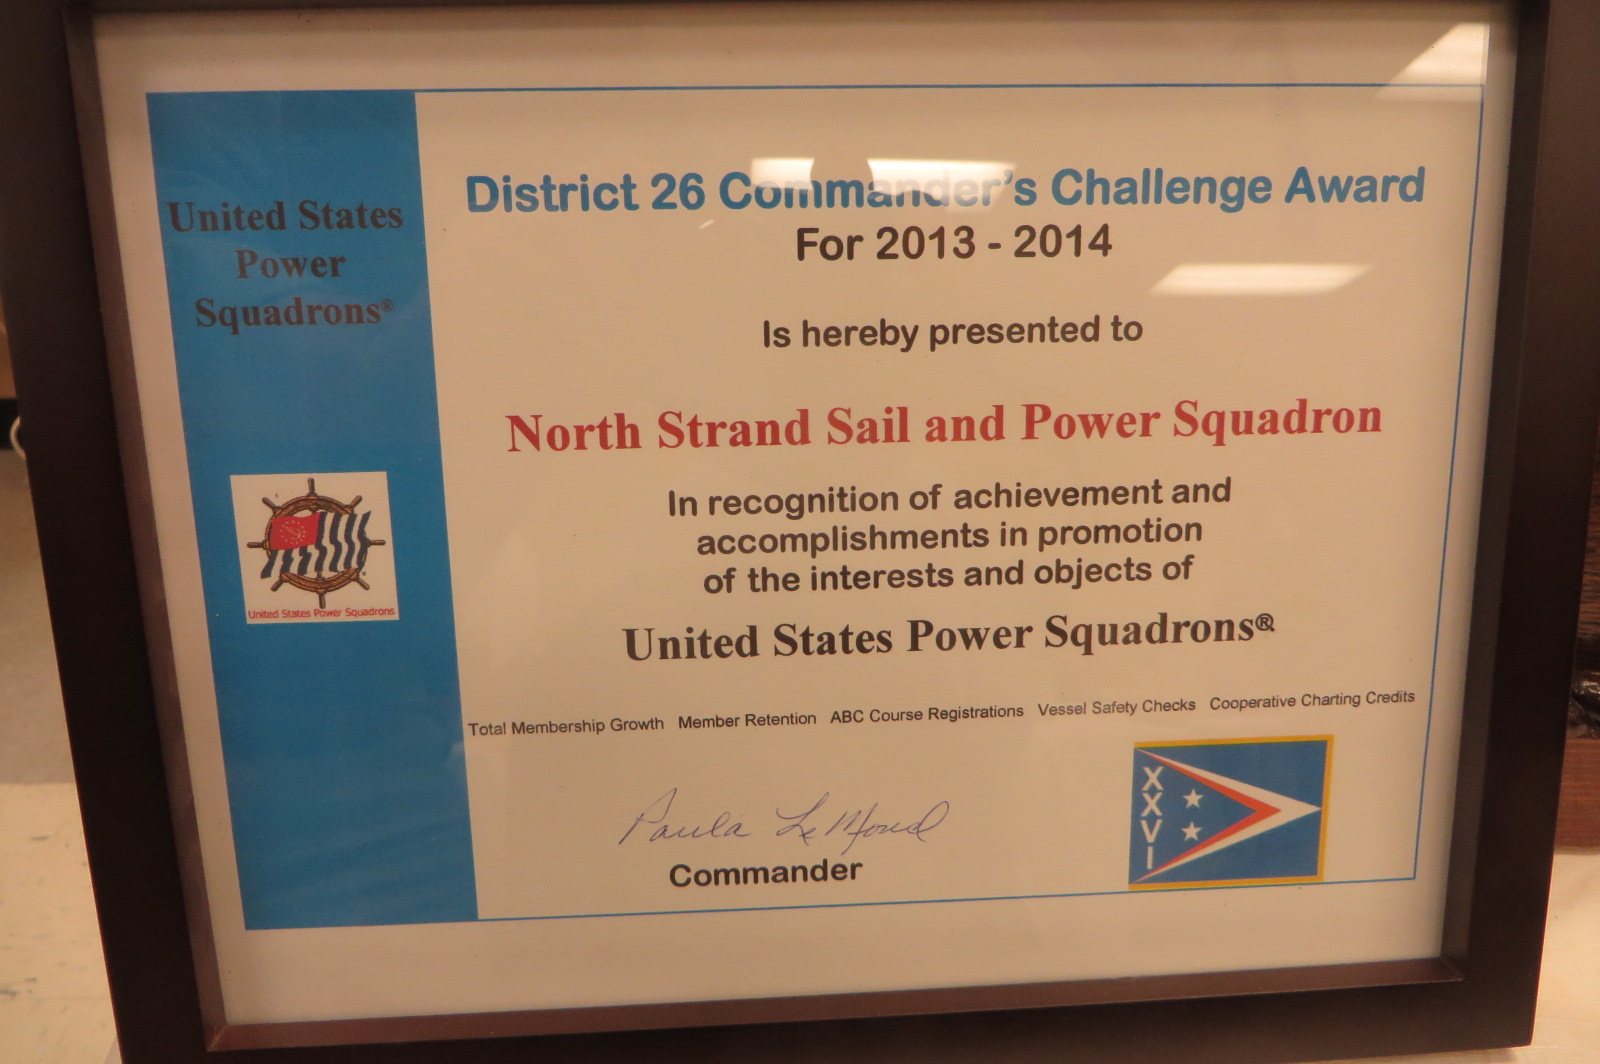 2014 D/C Challenge Award Certificate